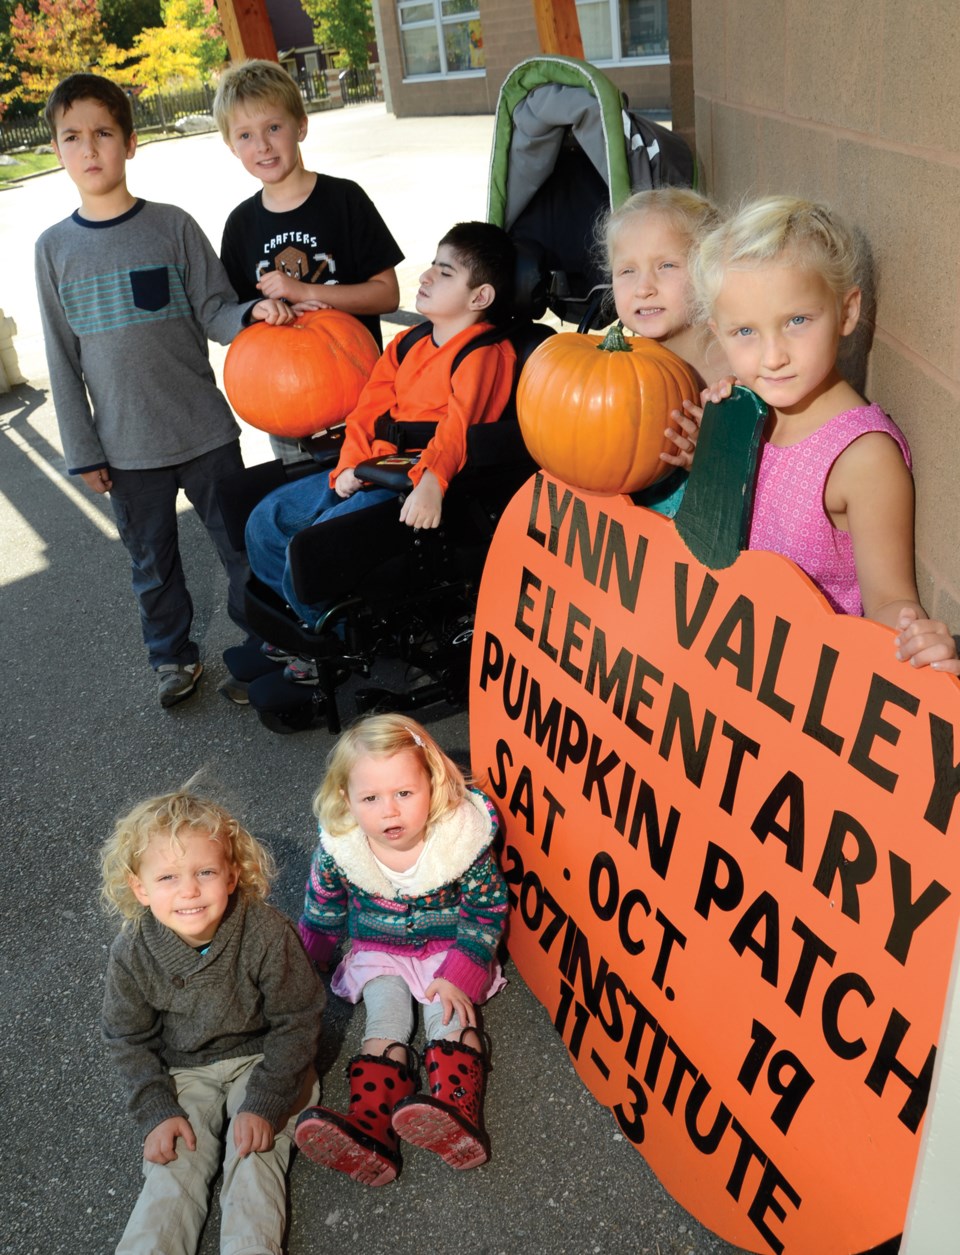 Lynn Valley pumpkin patch